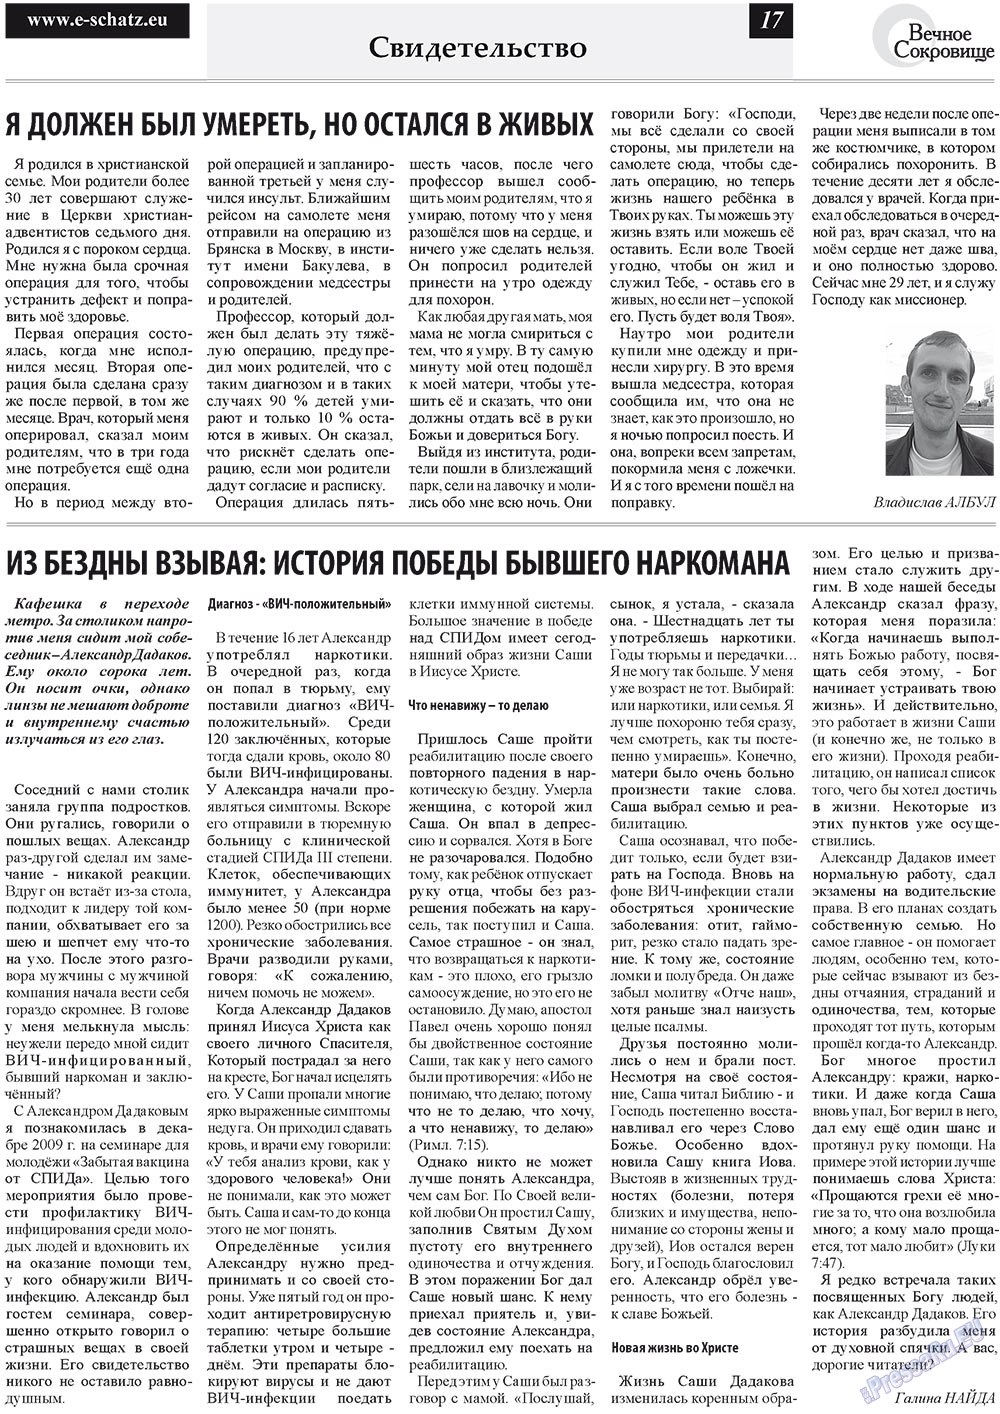 Вечное сокровище, газета. 2011 №3 стр.17